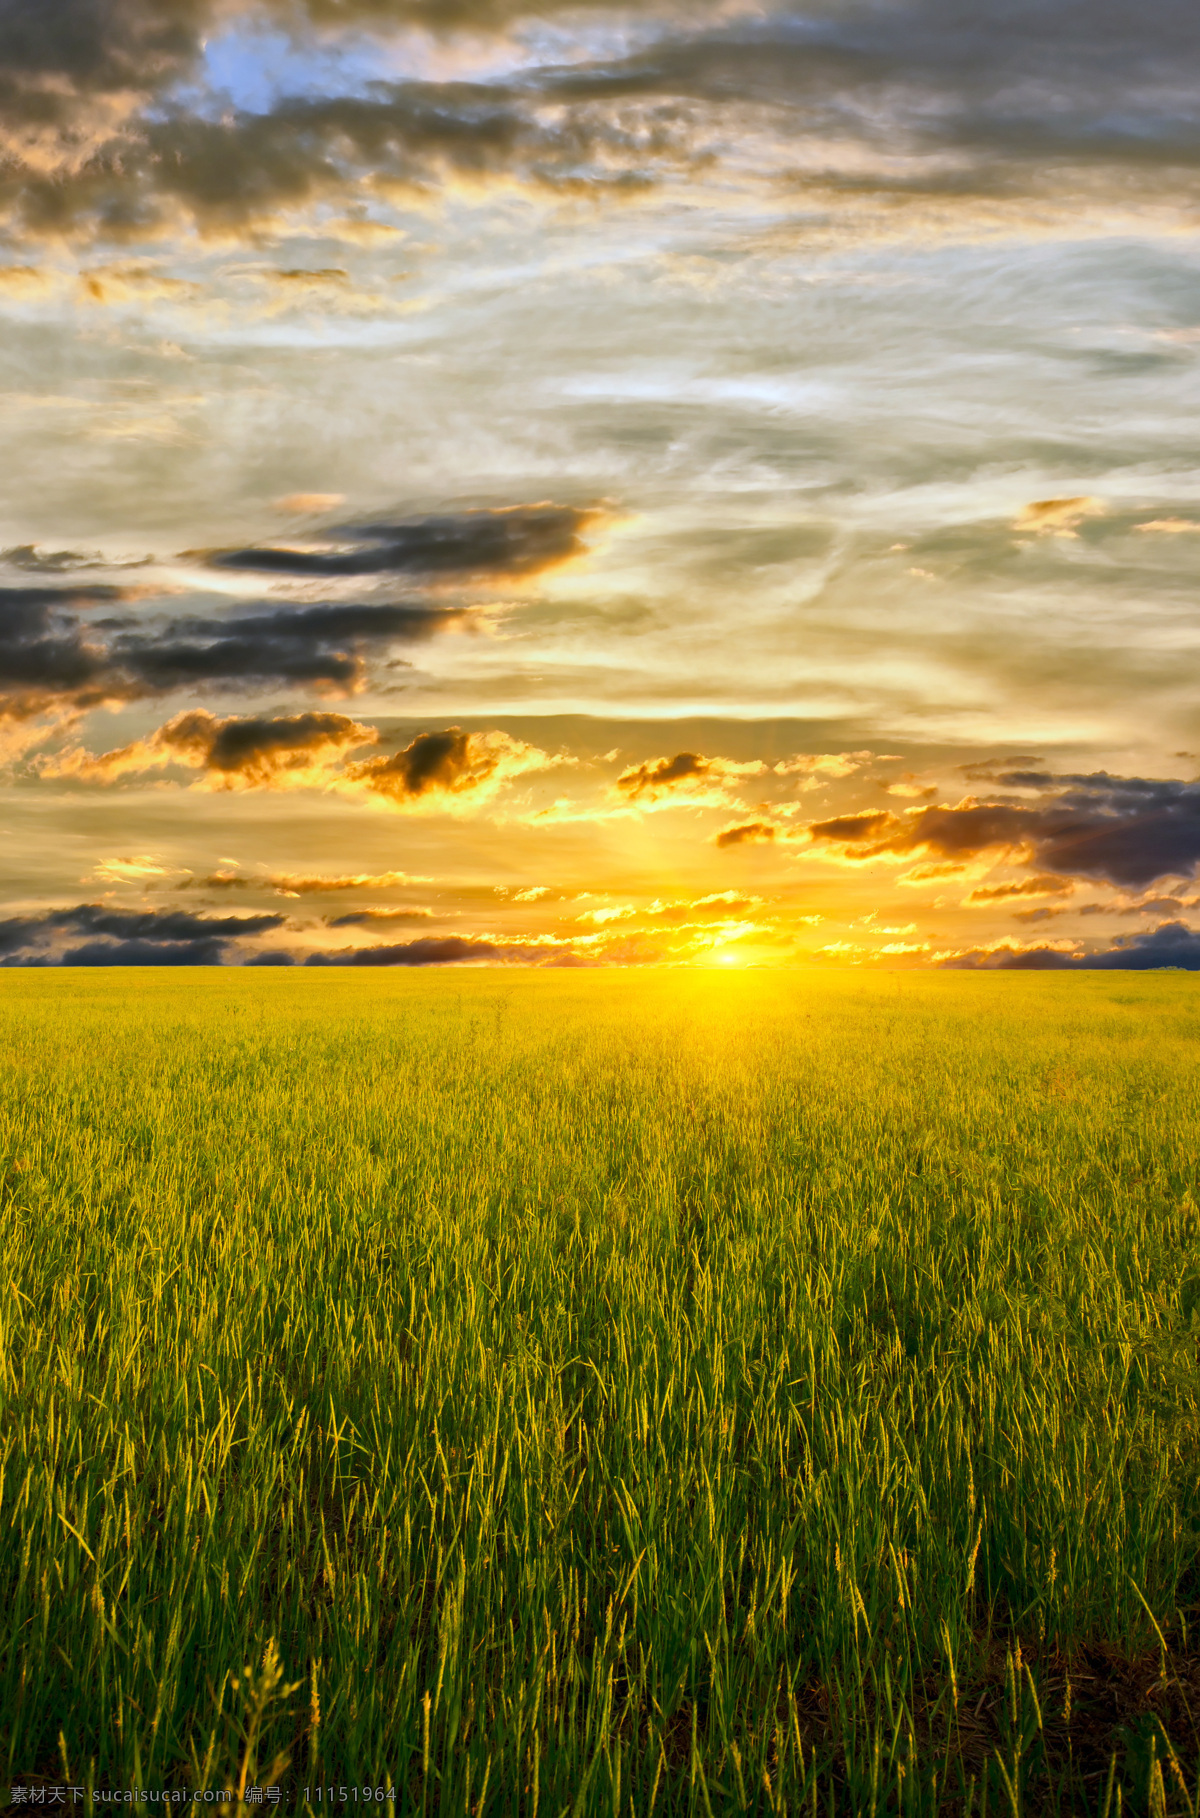 麦田 素材图片 麦地 自然 自然风光 大自然 自然景观 野外 田野 天空 夕阳 云朵 太阳 山水风景 风景图片